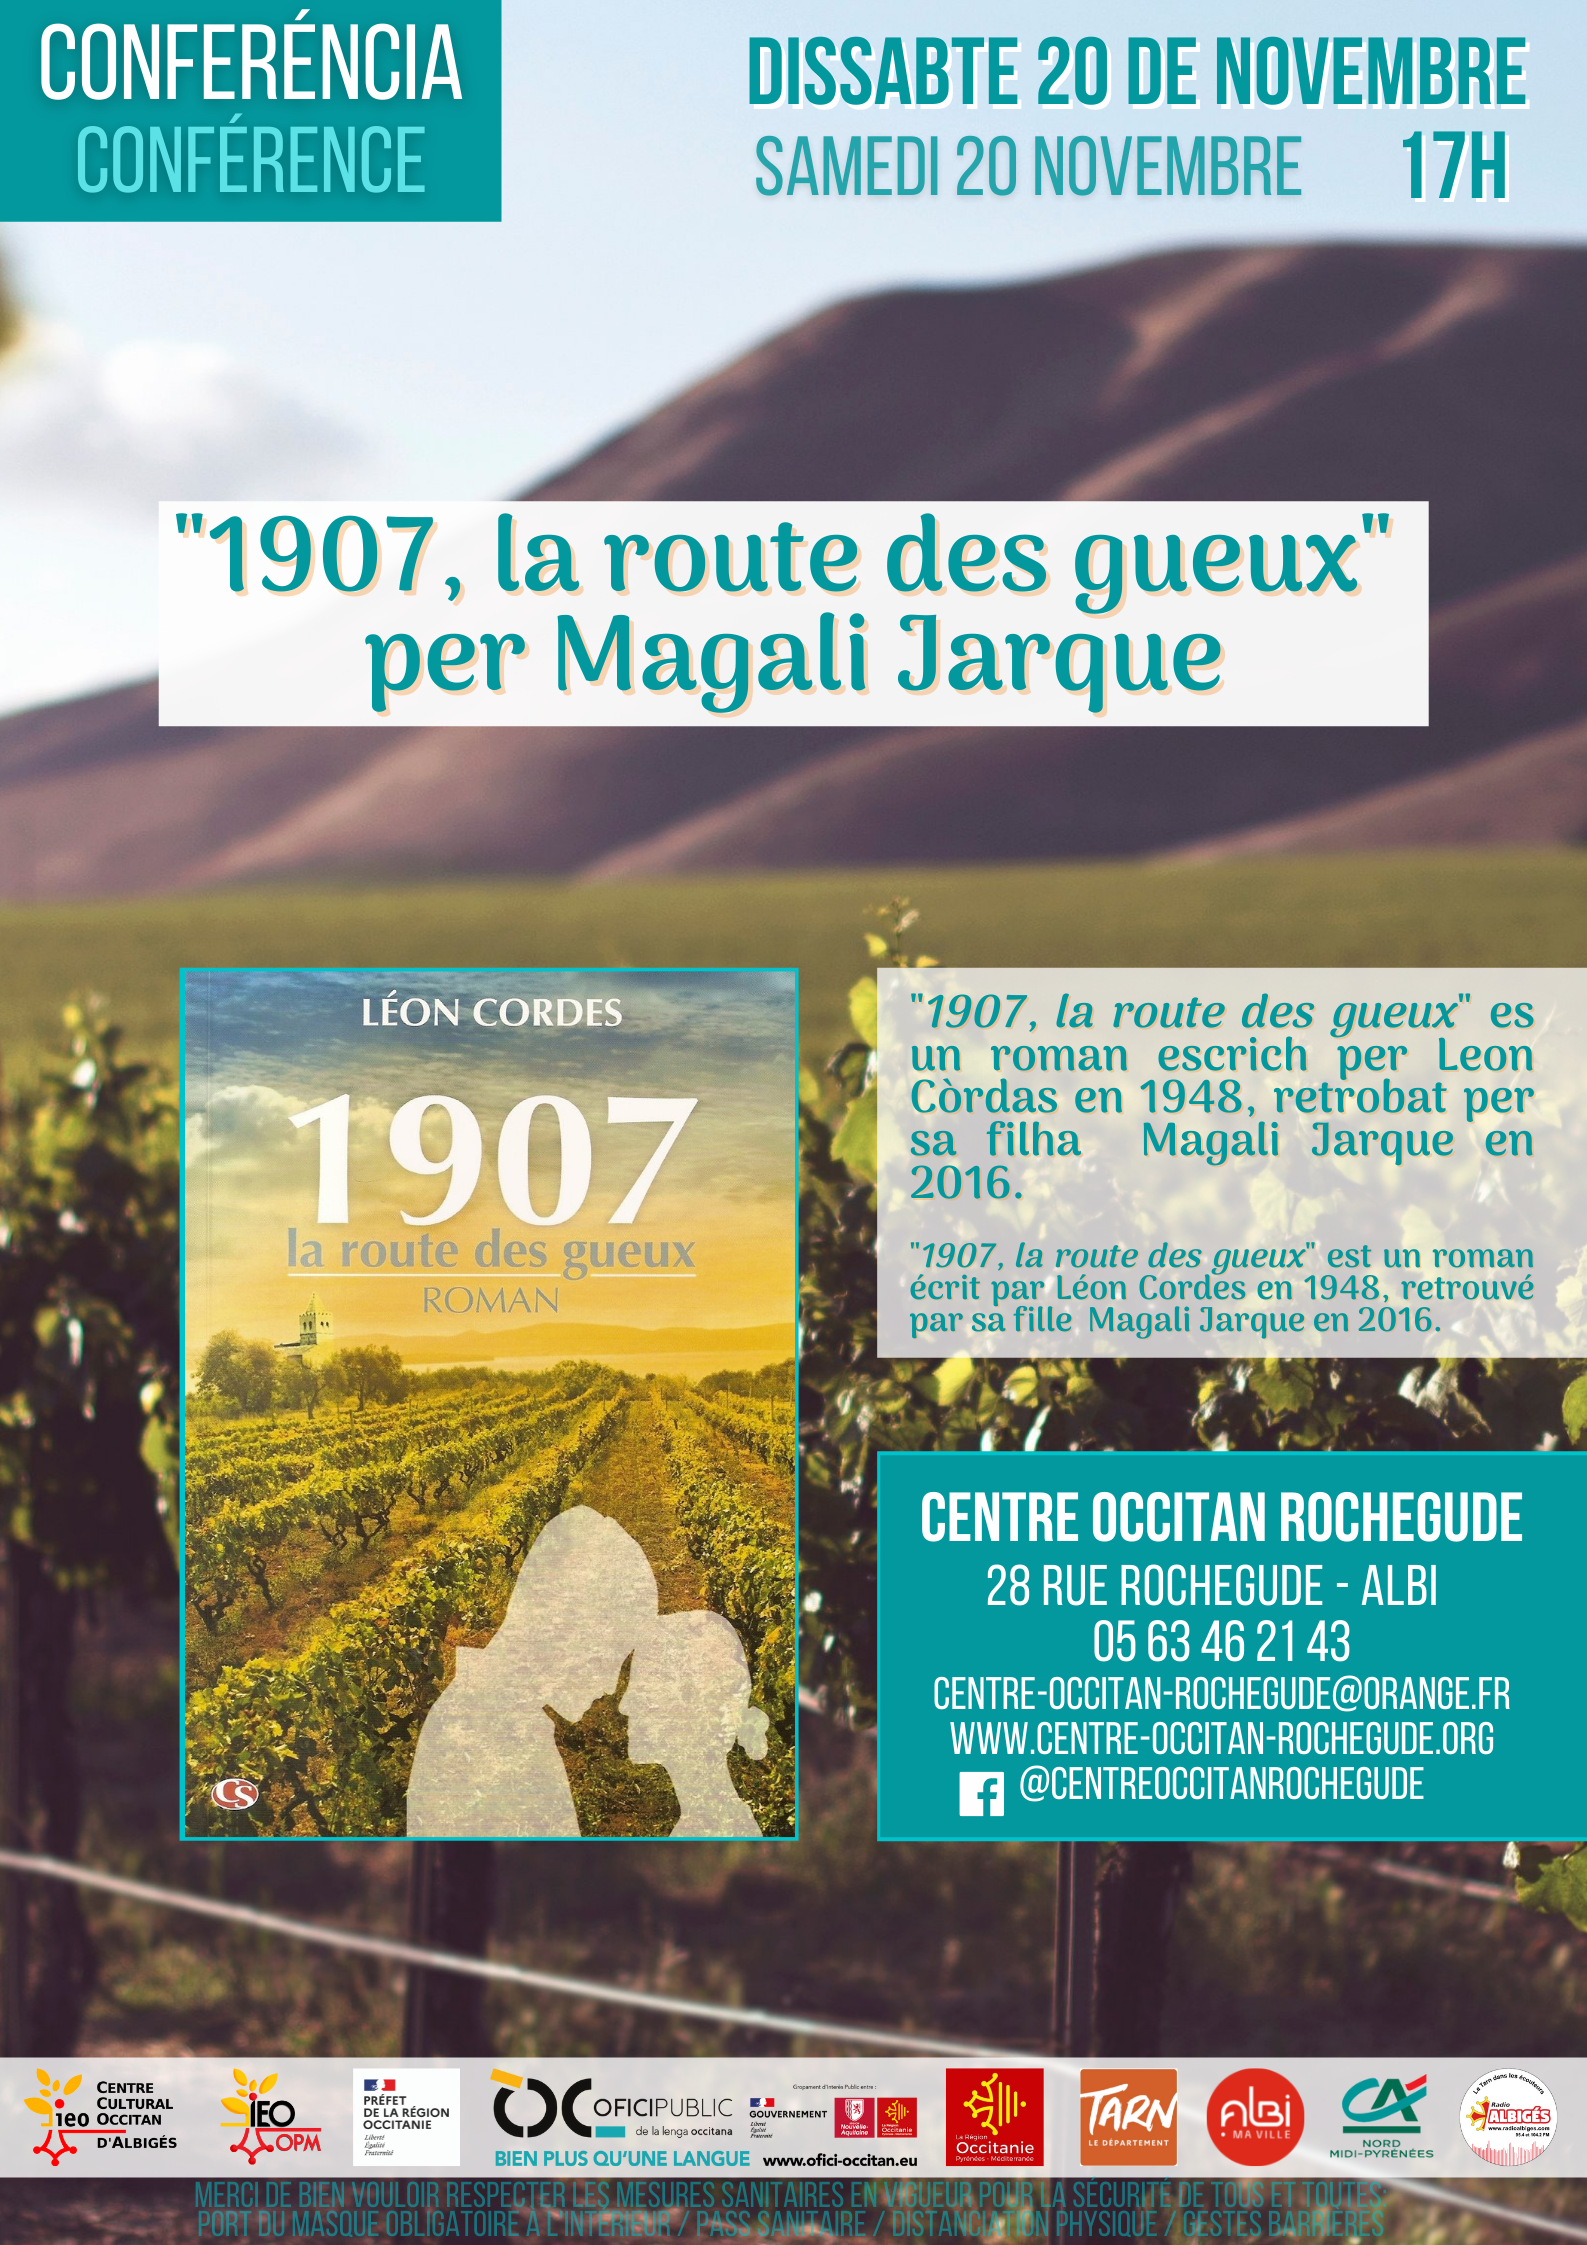 Lire la suite à propos de l’article « 1907, la route des gueux », per Magali Jarque